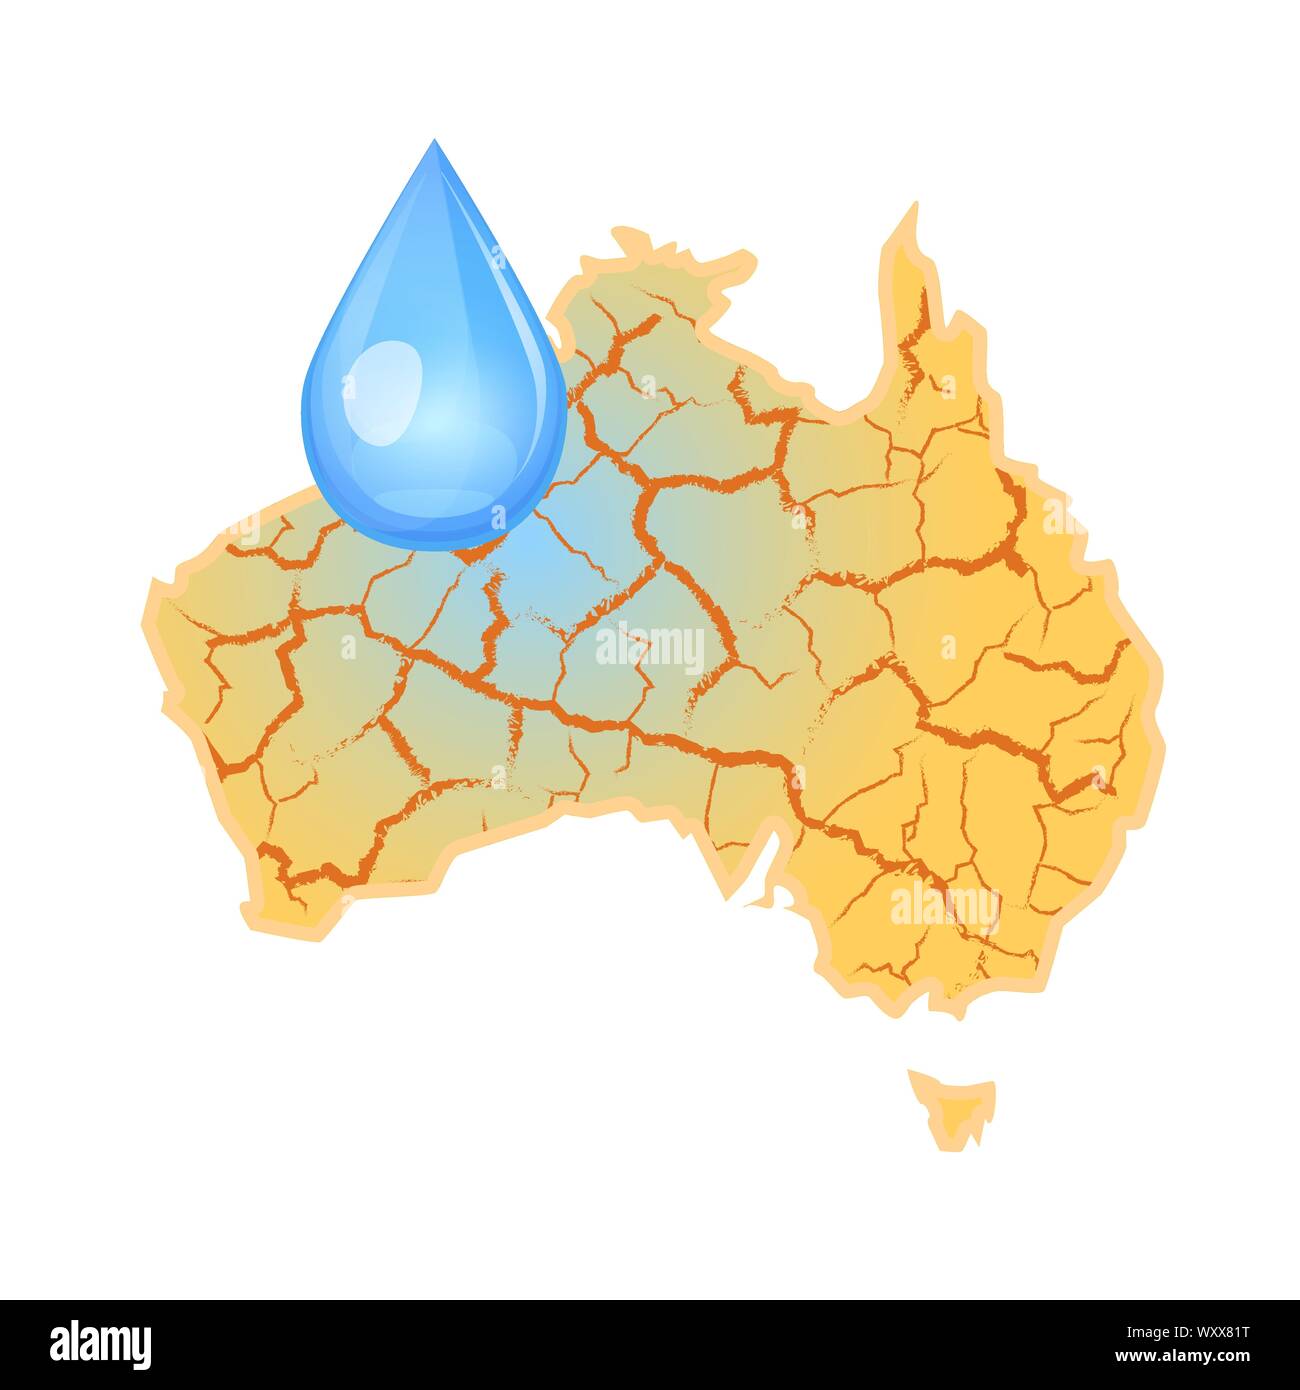 L'Australie a besoin d'eau. La rareté de l'eau concept global. La sécheresse en Australie et une goutte d'eau. En cas de catastrophe naturelle. Illustration vectorielle, isolé sur fond blanc. Illustration de Vecteur